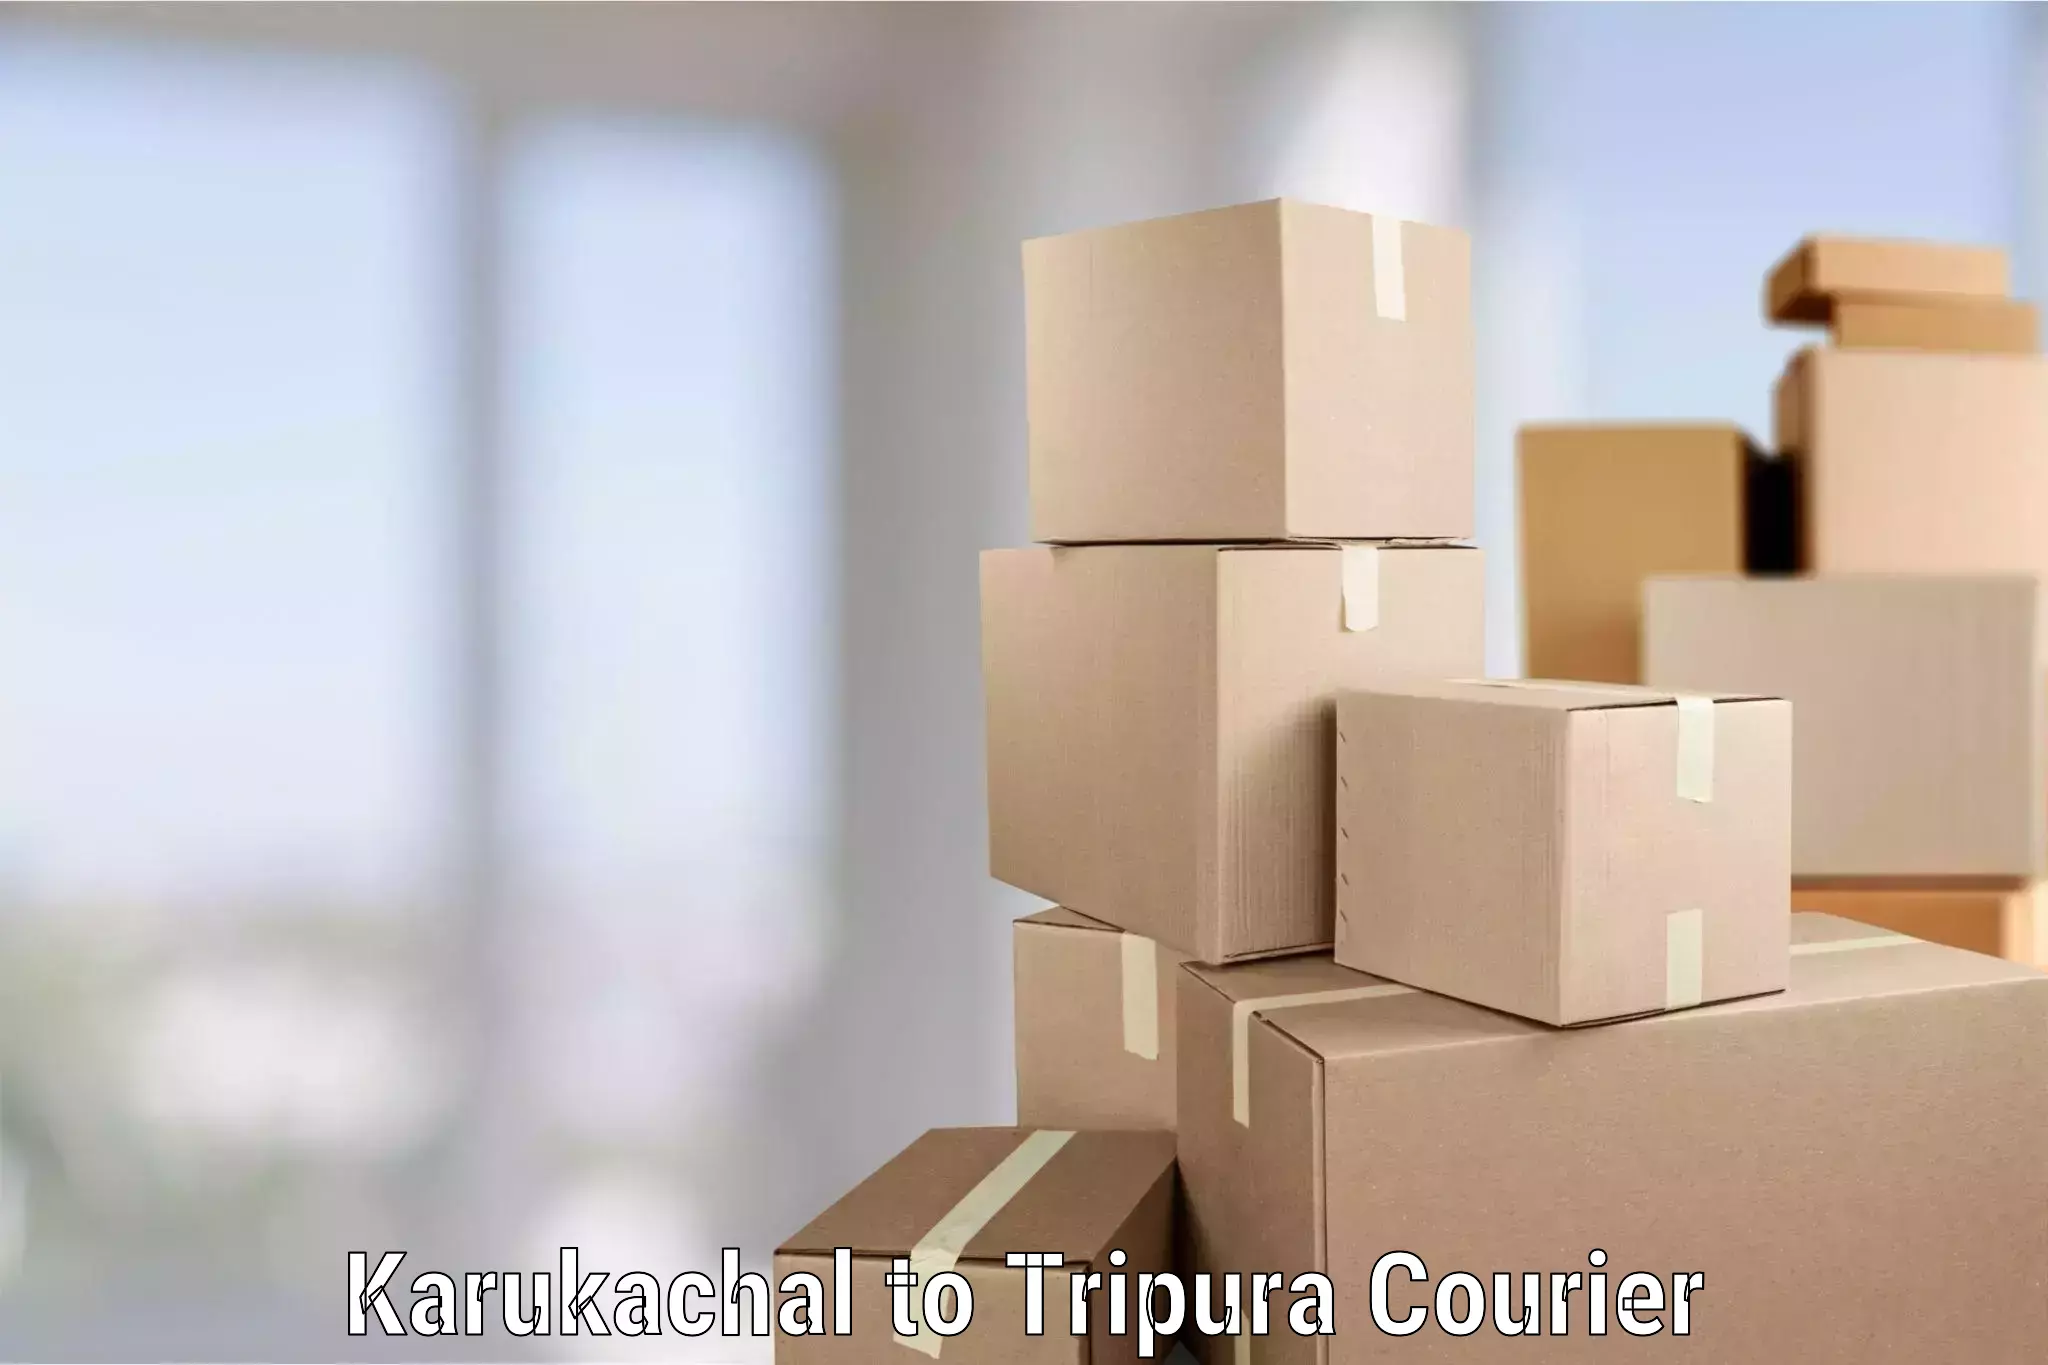 Furniture moving experts Karukachal to Manughat